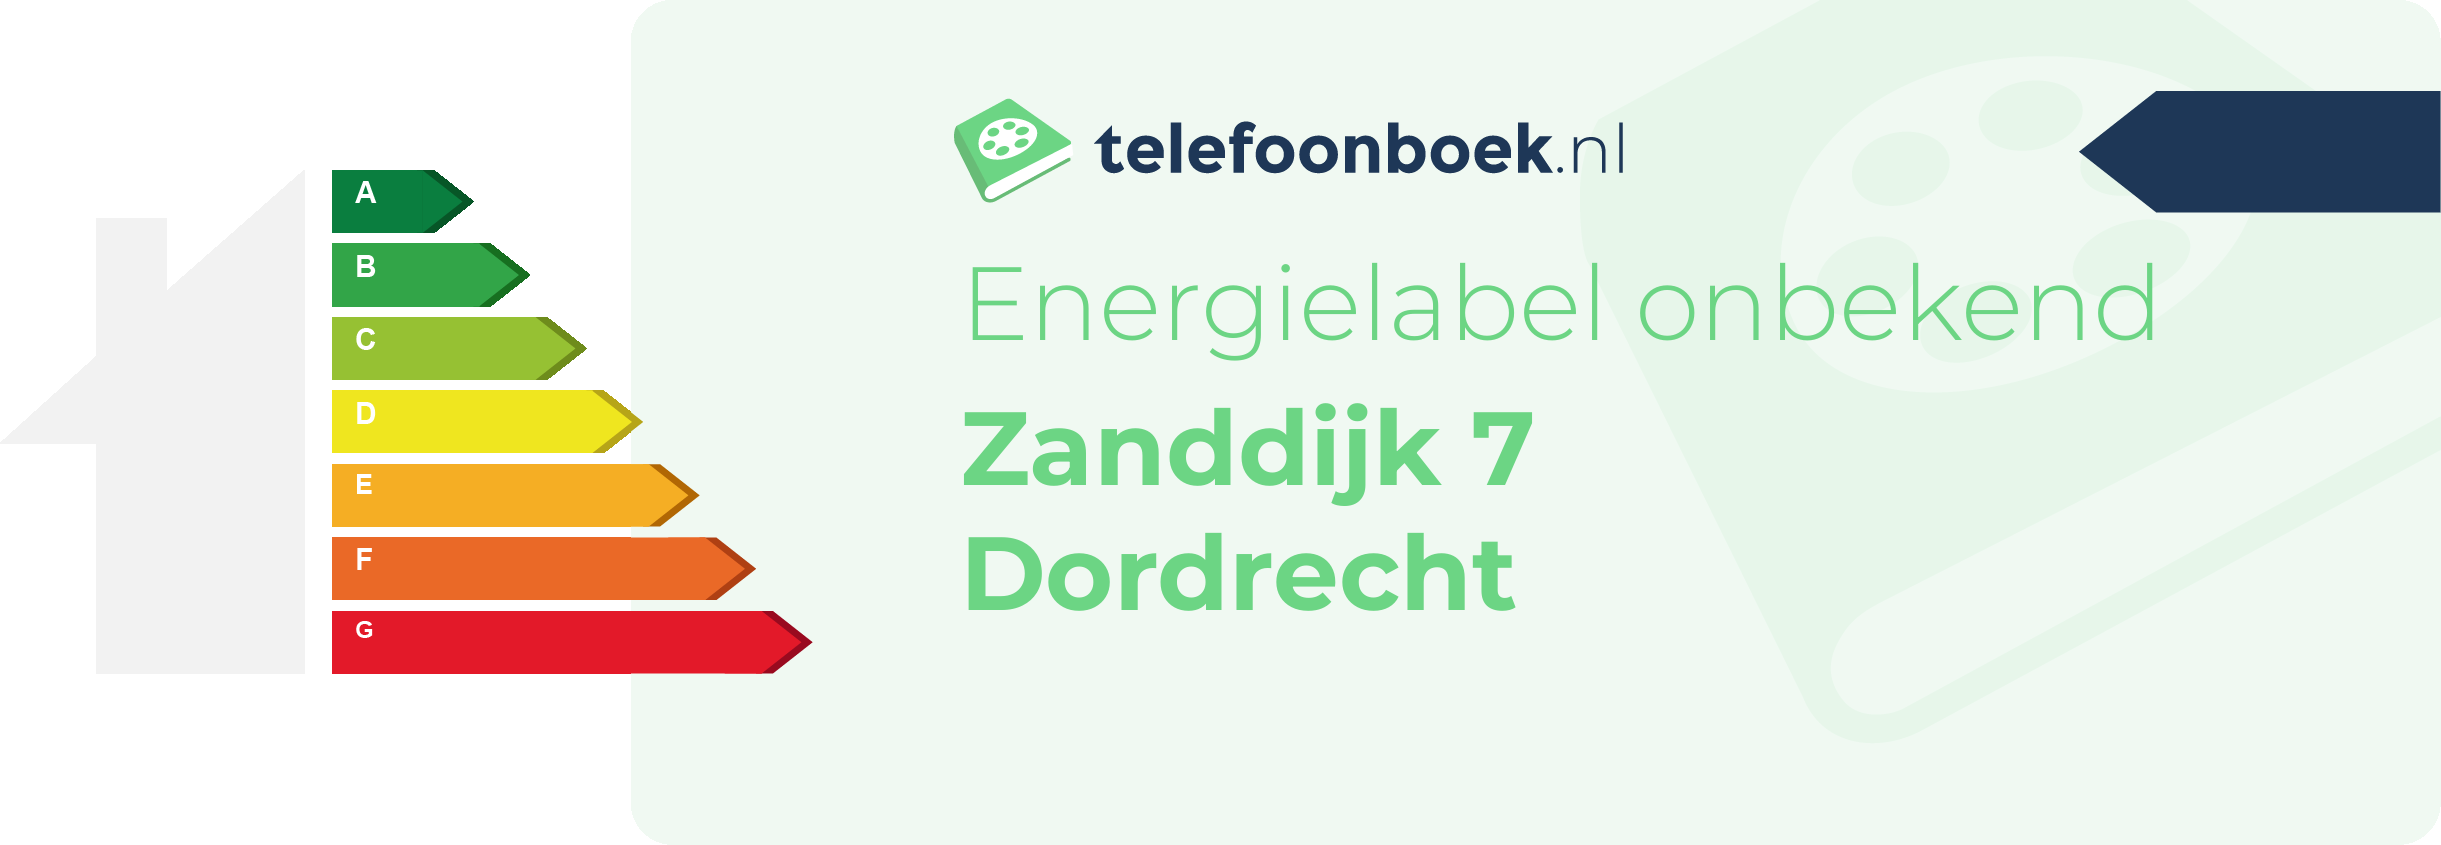 Energielabel Zanddijk 7 Dordrecht